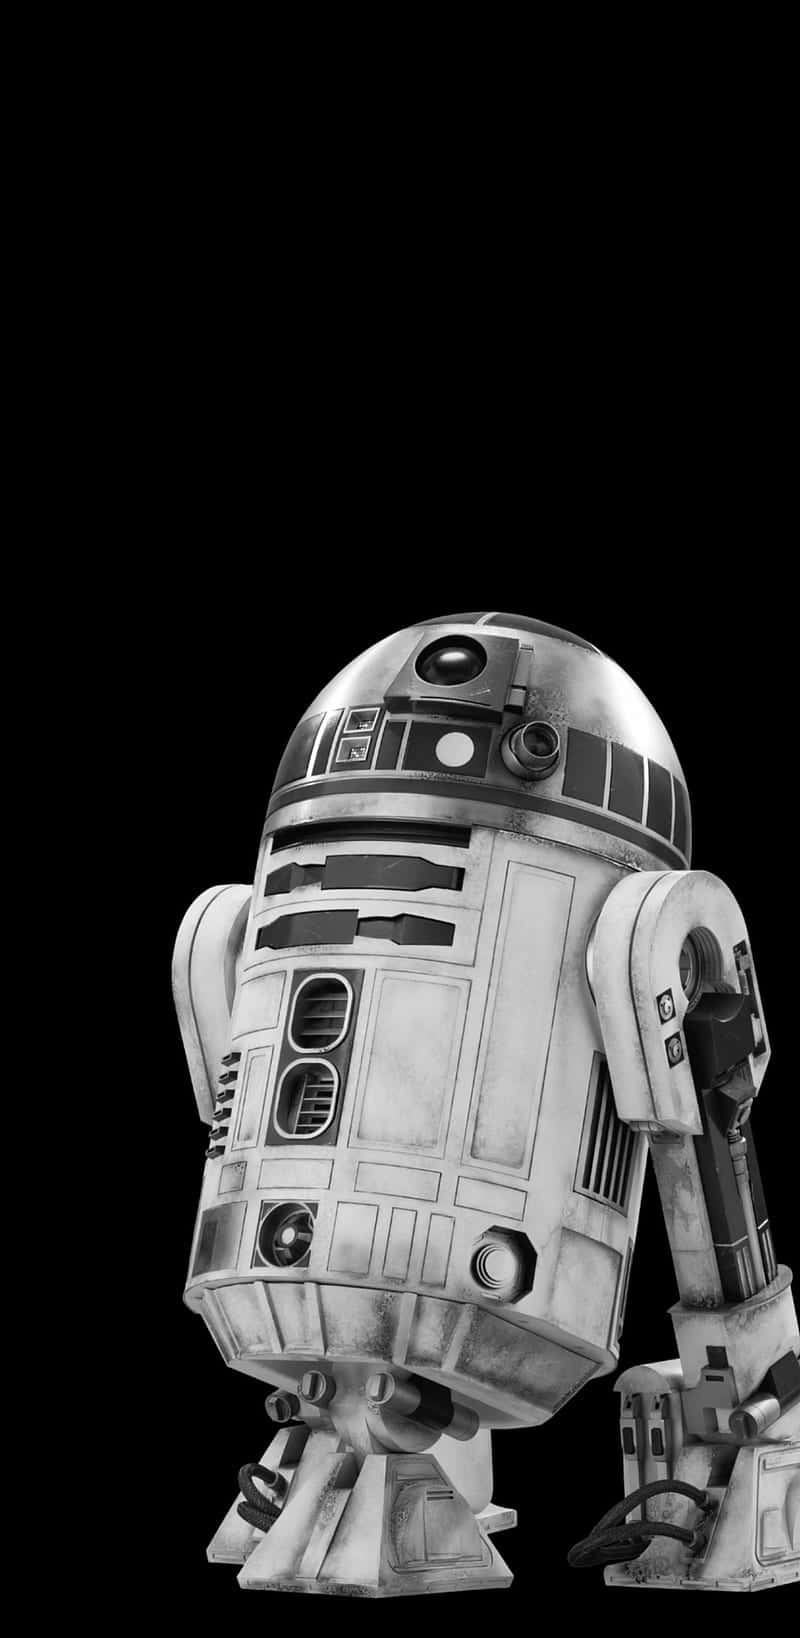 Derikonische R2-d2 Roboterkarakter Aus Star Wars Wallpaper